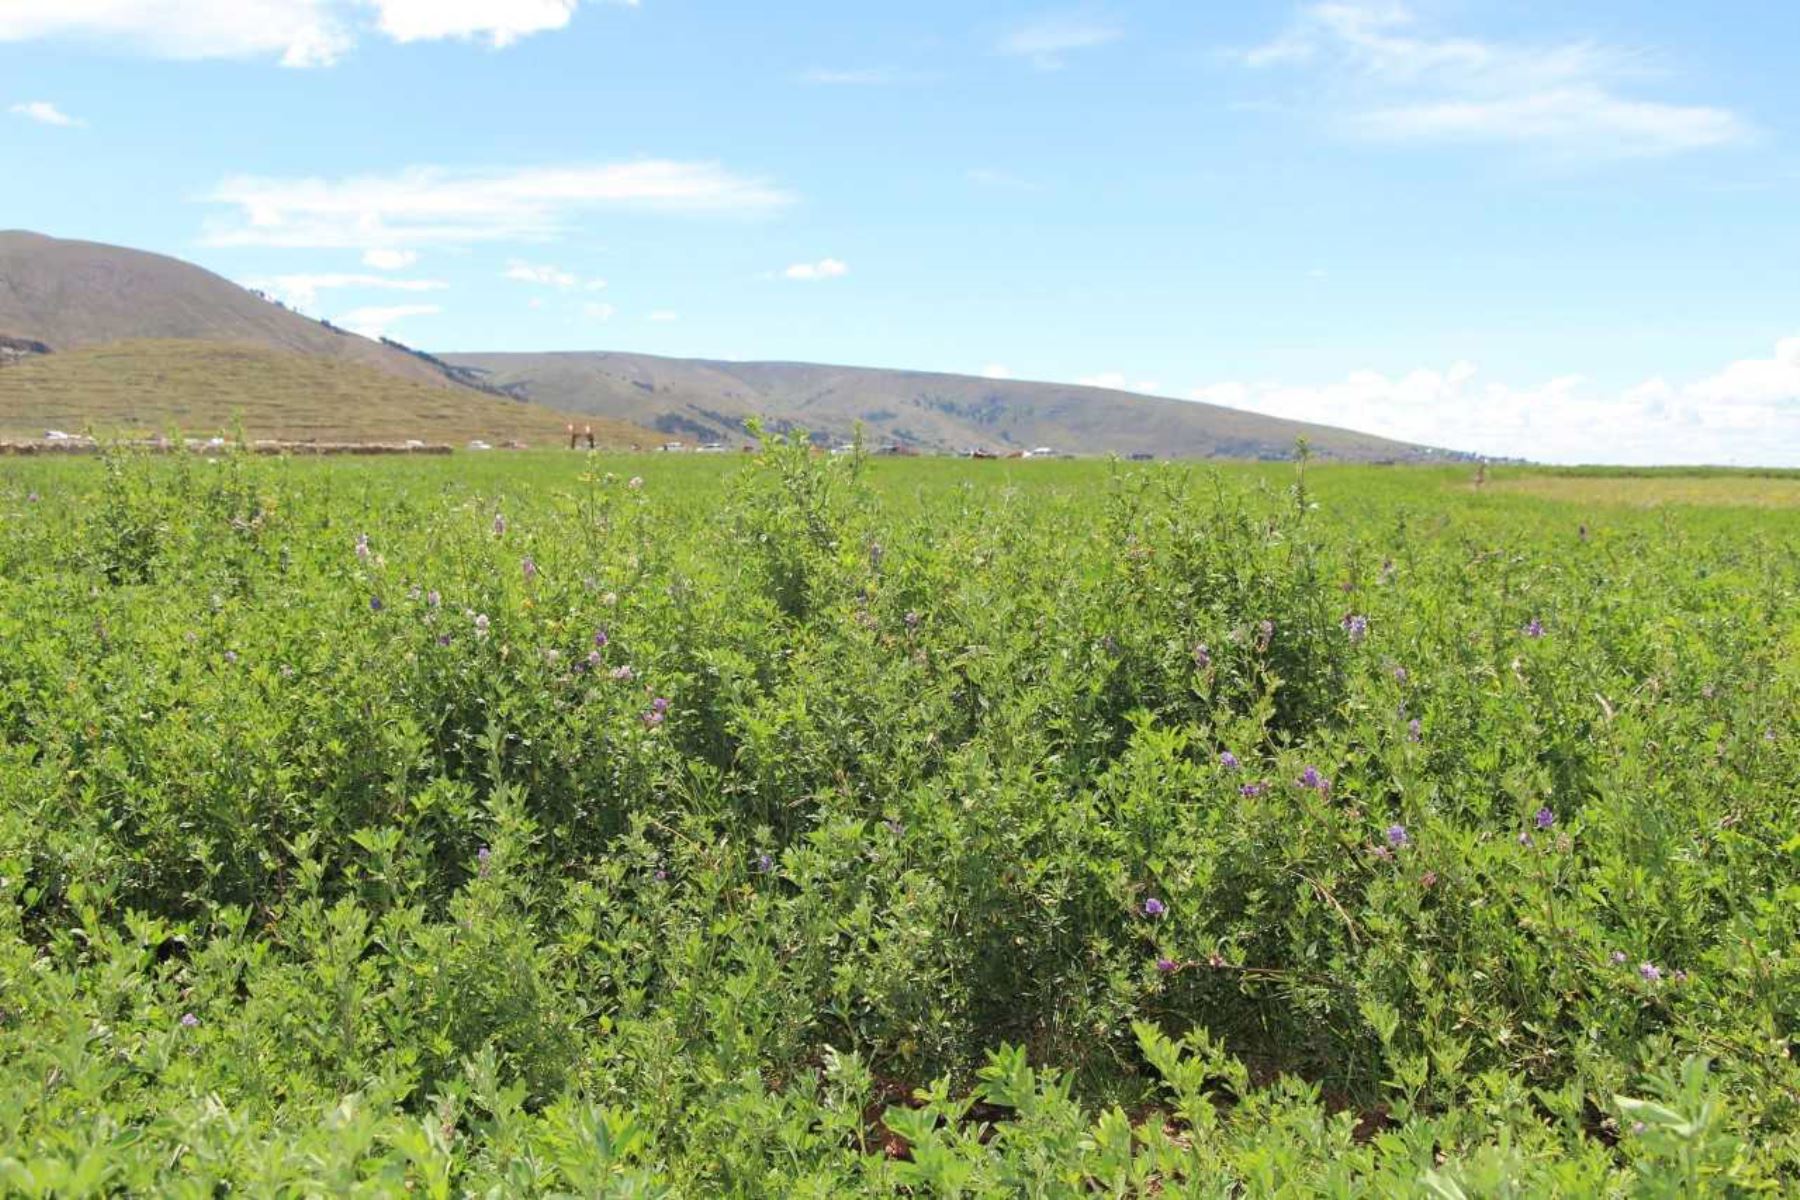 Agro Rural promovió la siembra de pastos en las zonas altas de seis provincias de Arequipa. Foto: ANDINA/Archivo